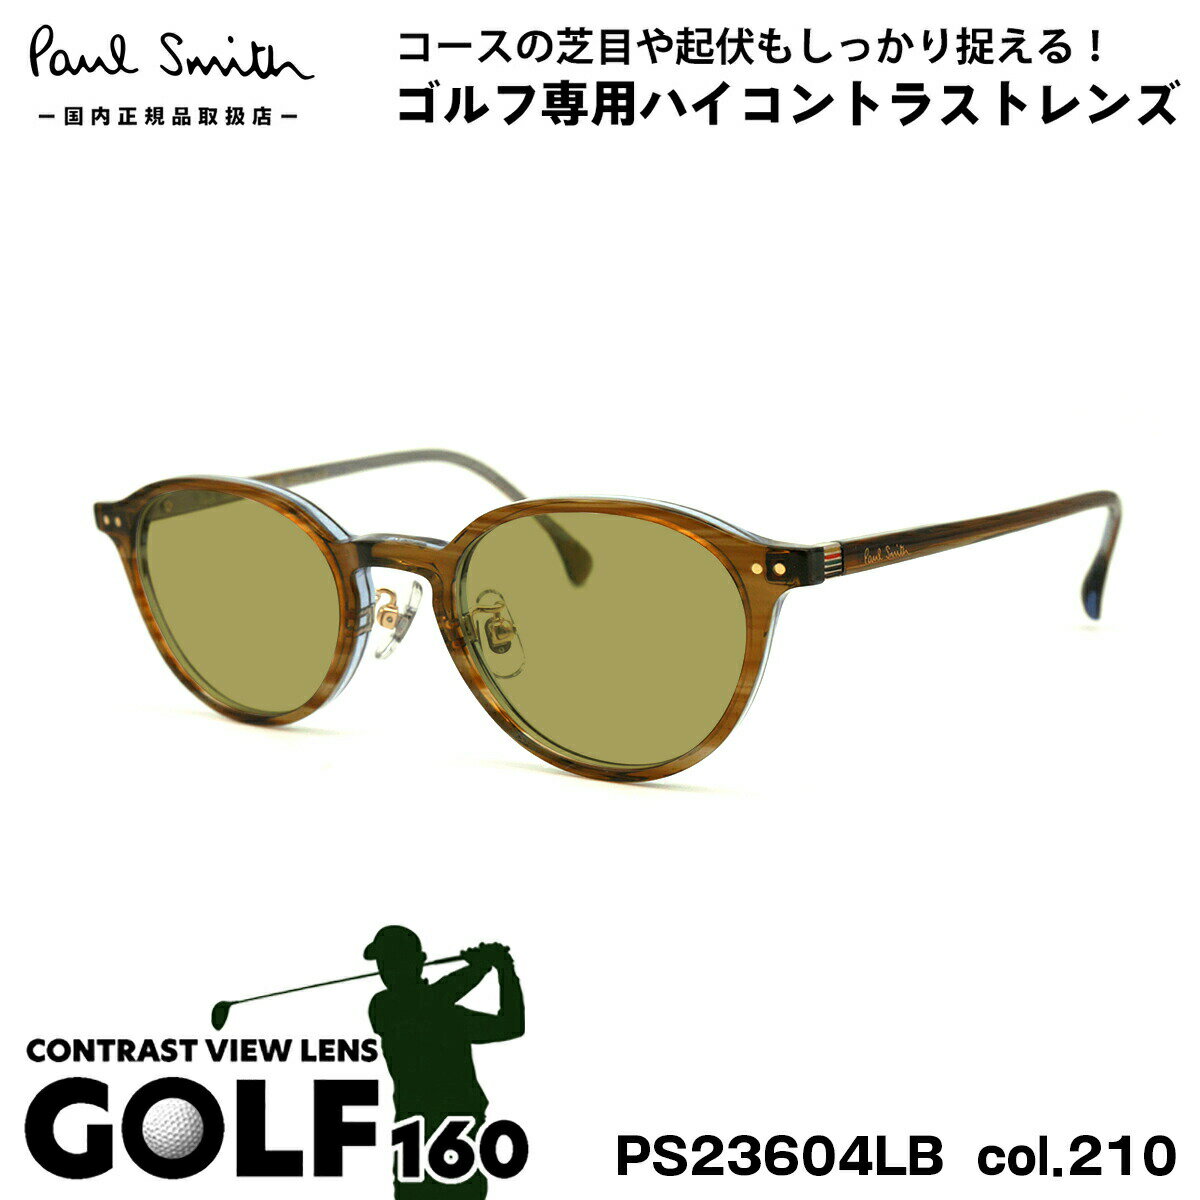 ポールスミス サングラス ゴルフ PS23604LB col.210 47mm Paul Smith HANLEY UVカット 国内正規品 ゴルフ用サングラス